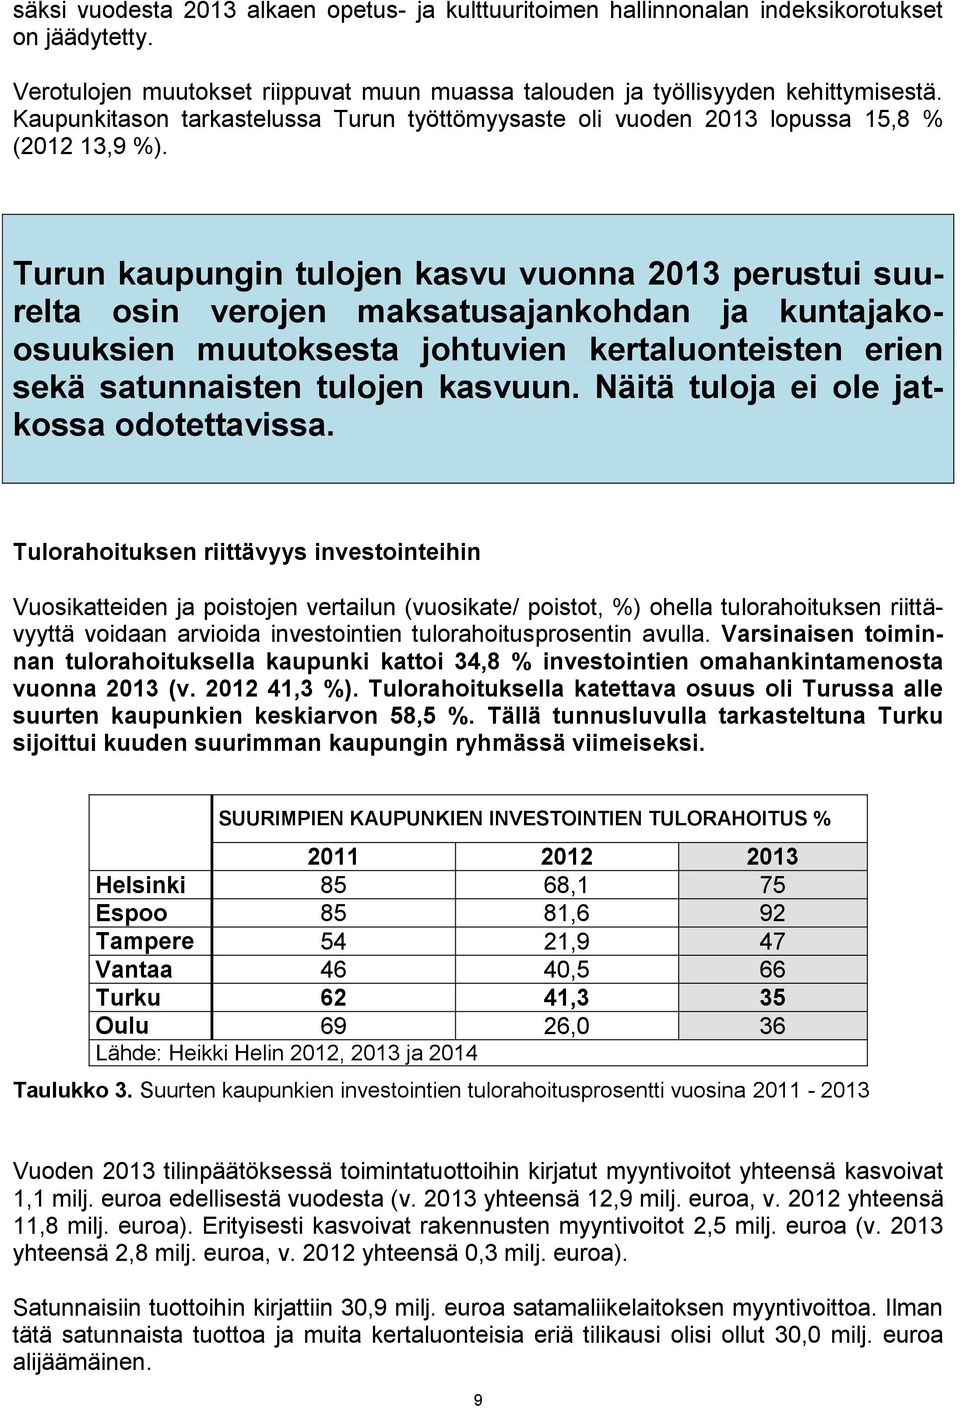 Turun kaupungin tulojen kasvu vuonna 2013 perustui suurelta osin verojen maksatusajankohdan ja kuntajakoosuuksien muutoksesta johtuvien kertaluonteisten erien sekä satunnaisten tulojen kasvuun.